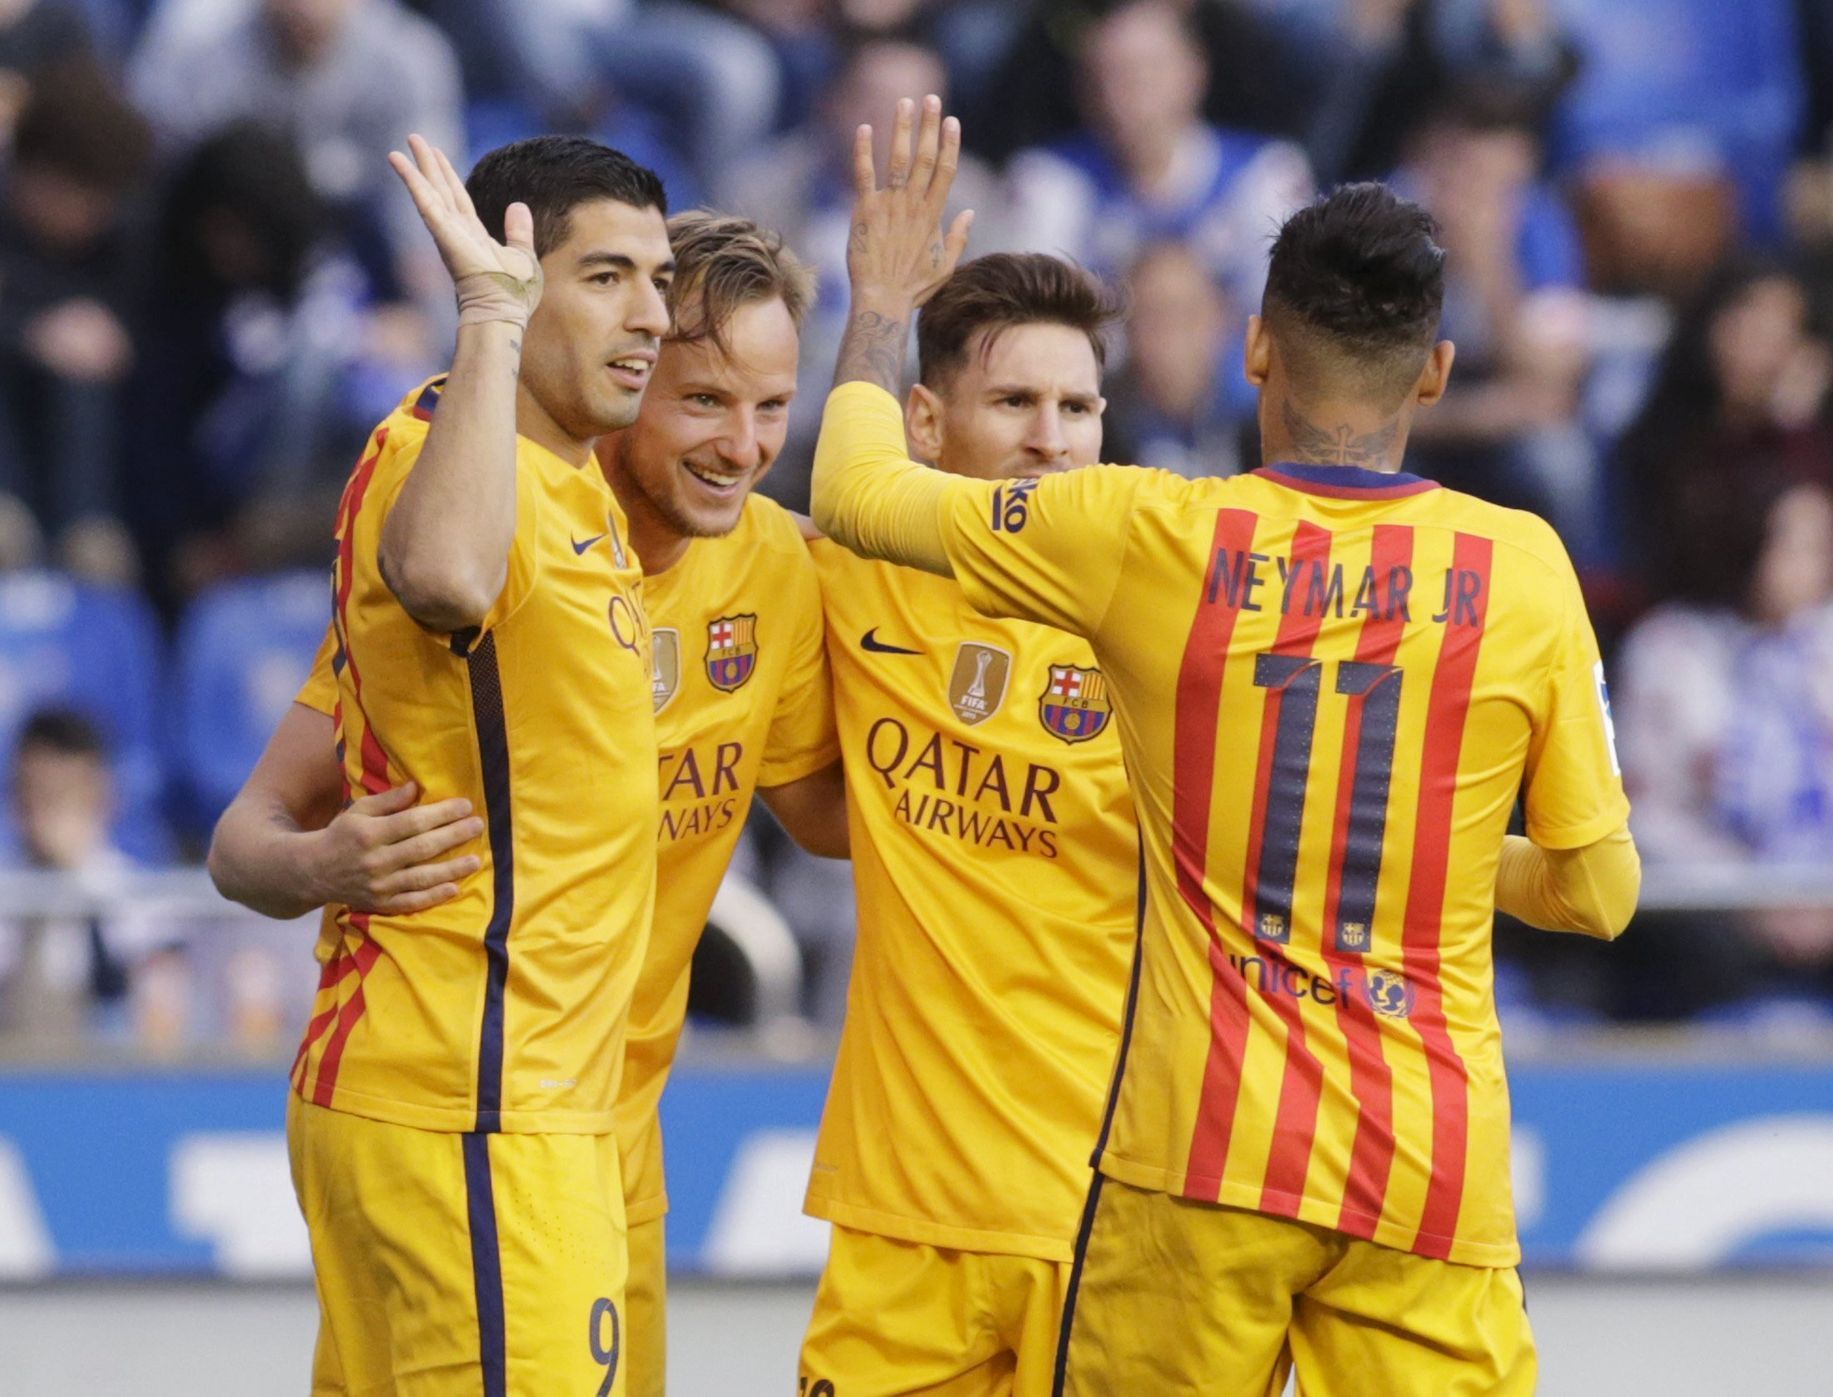 Radost hráčů Barcelony